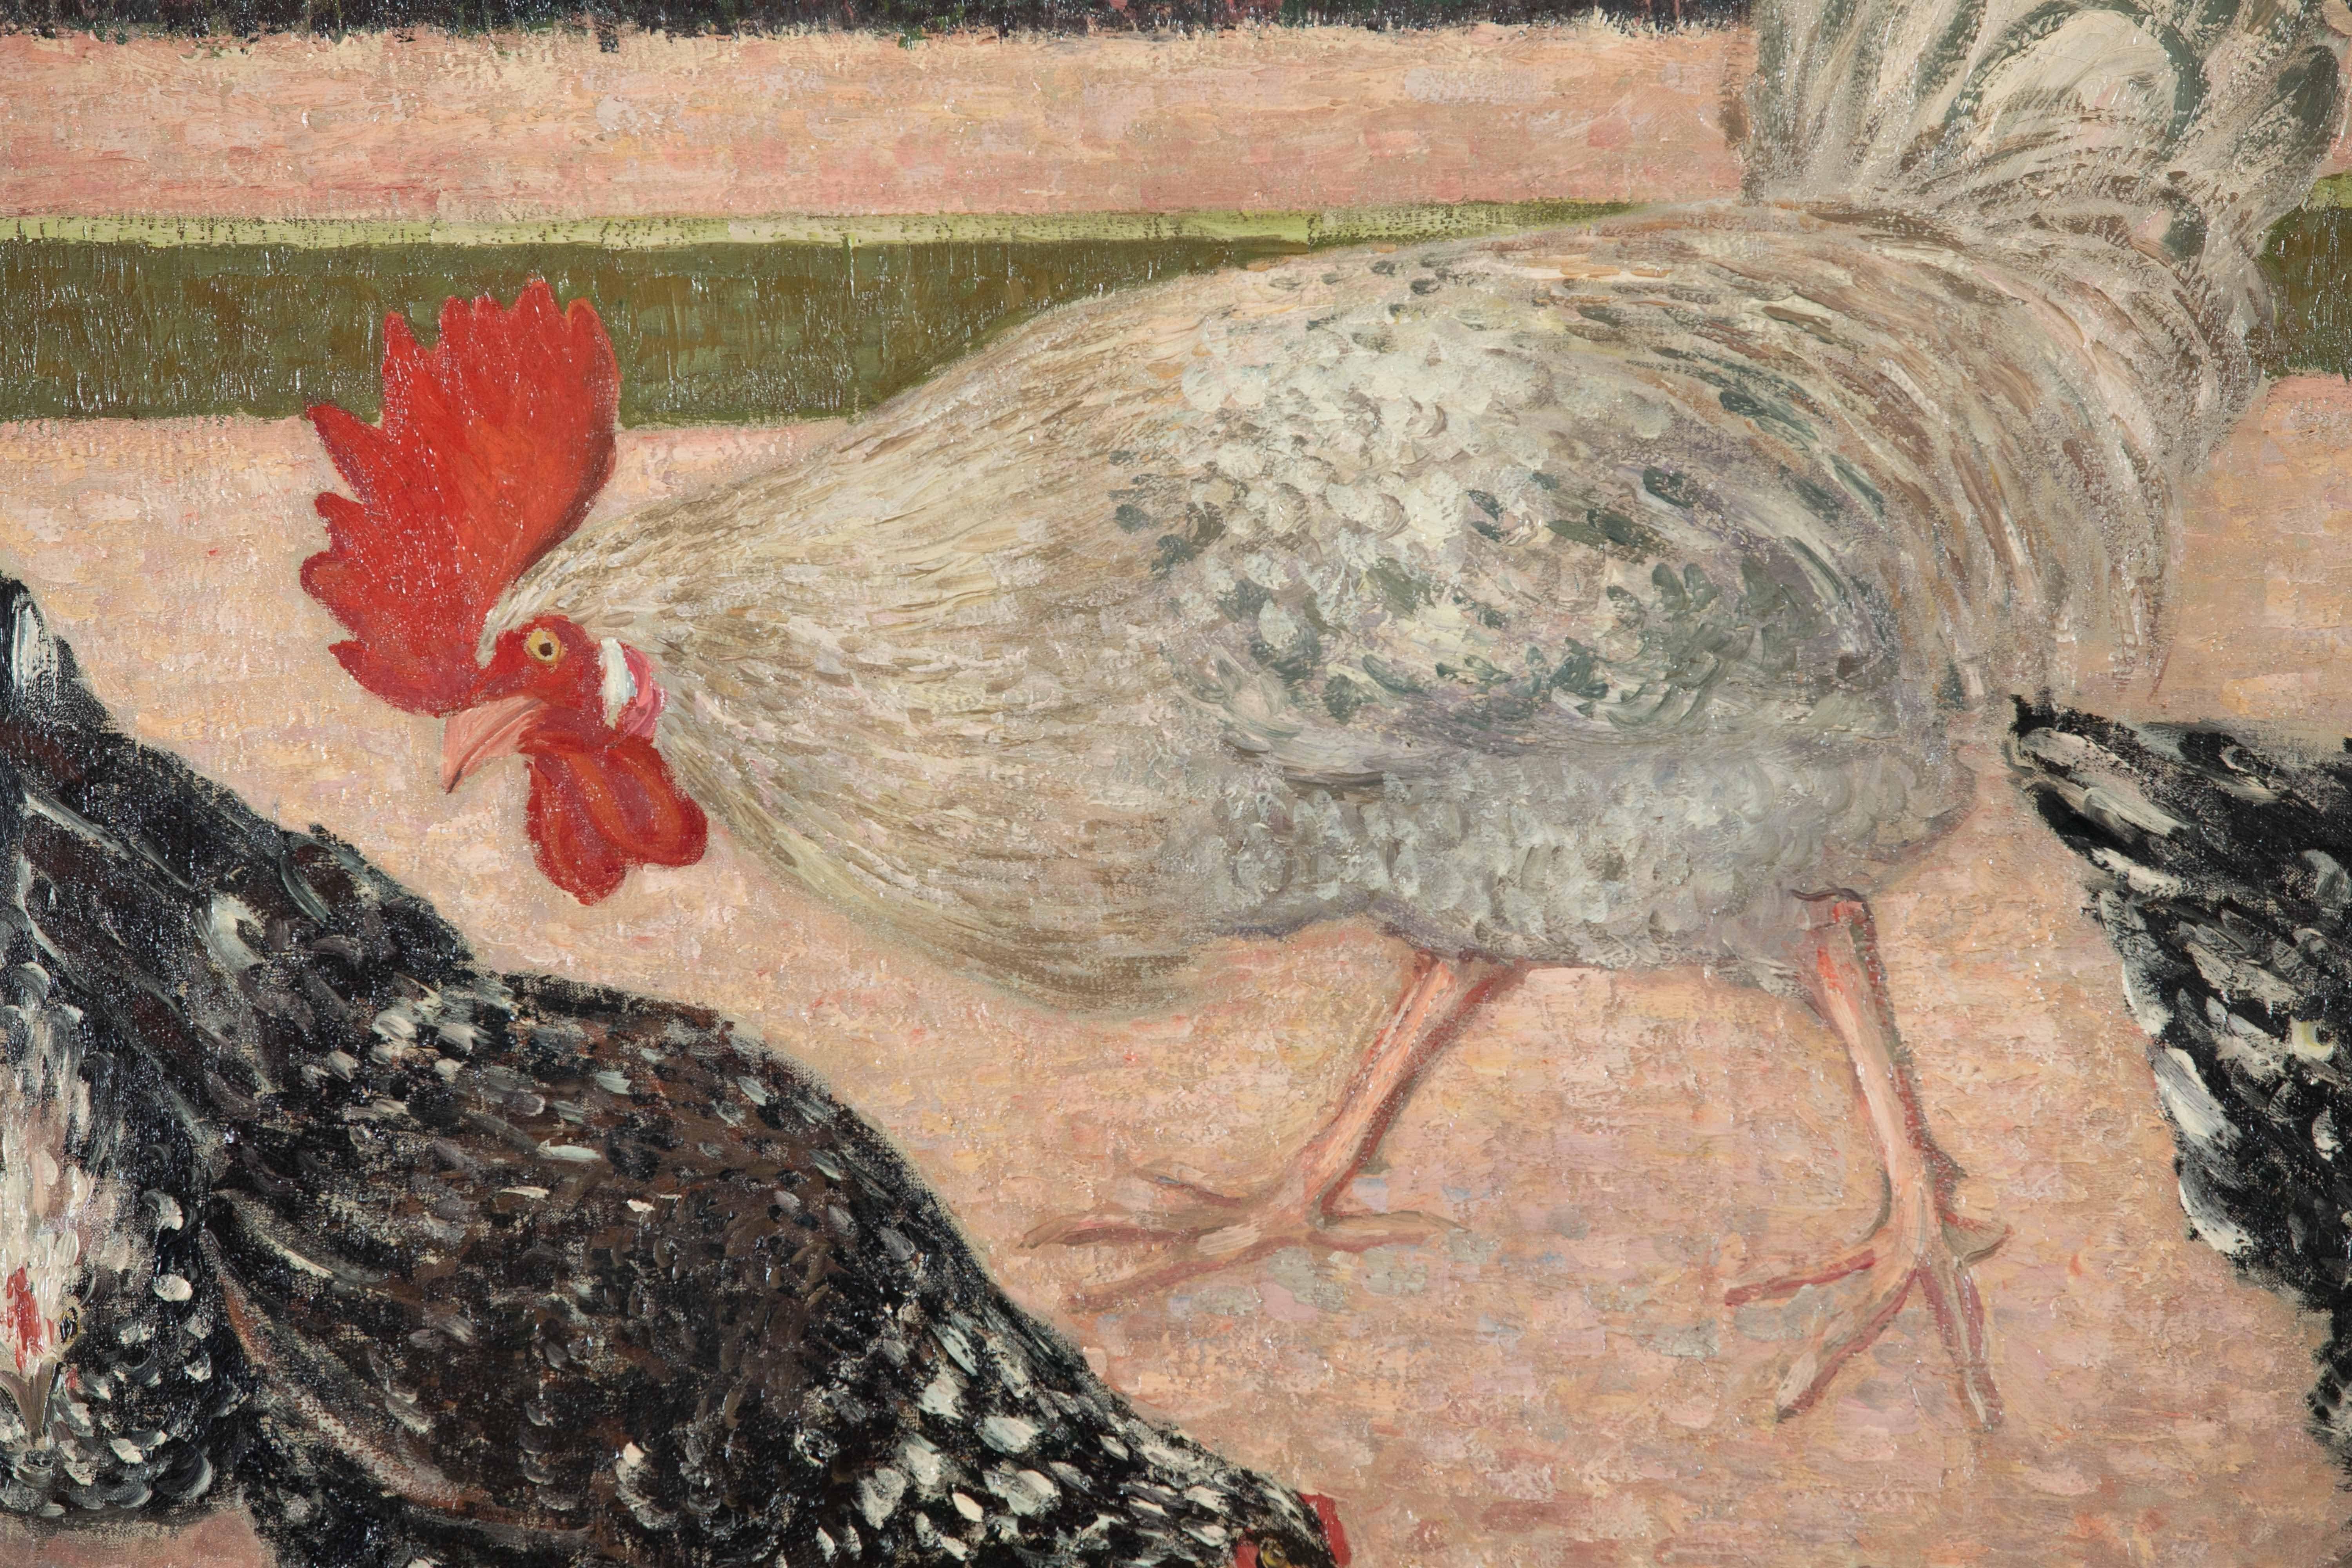 Coq et poules von Georges Manzana Pissarro (1871-1961)
Öl auf Leinwand
65 x 81 cm (25 ⁵/₈ x 31 ⁷/₈ Zoll)
Signiert und datiert unten rechts, G. Manzana. 00 
Hingerichtet im Jahr 1900

Dieses Werk wird von einem Echtheitszertifikat von Lélia Pissarro